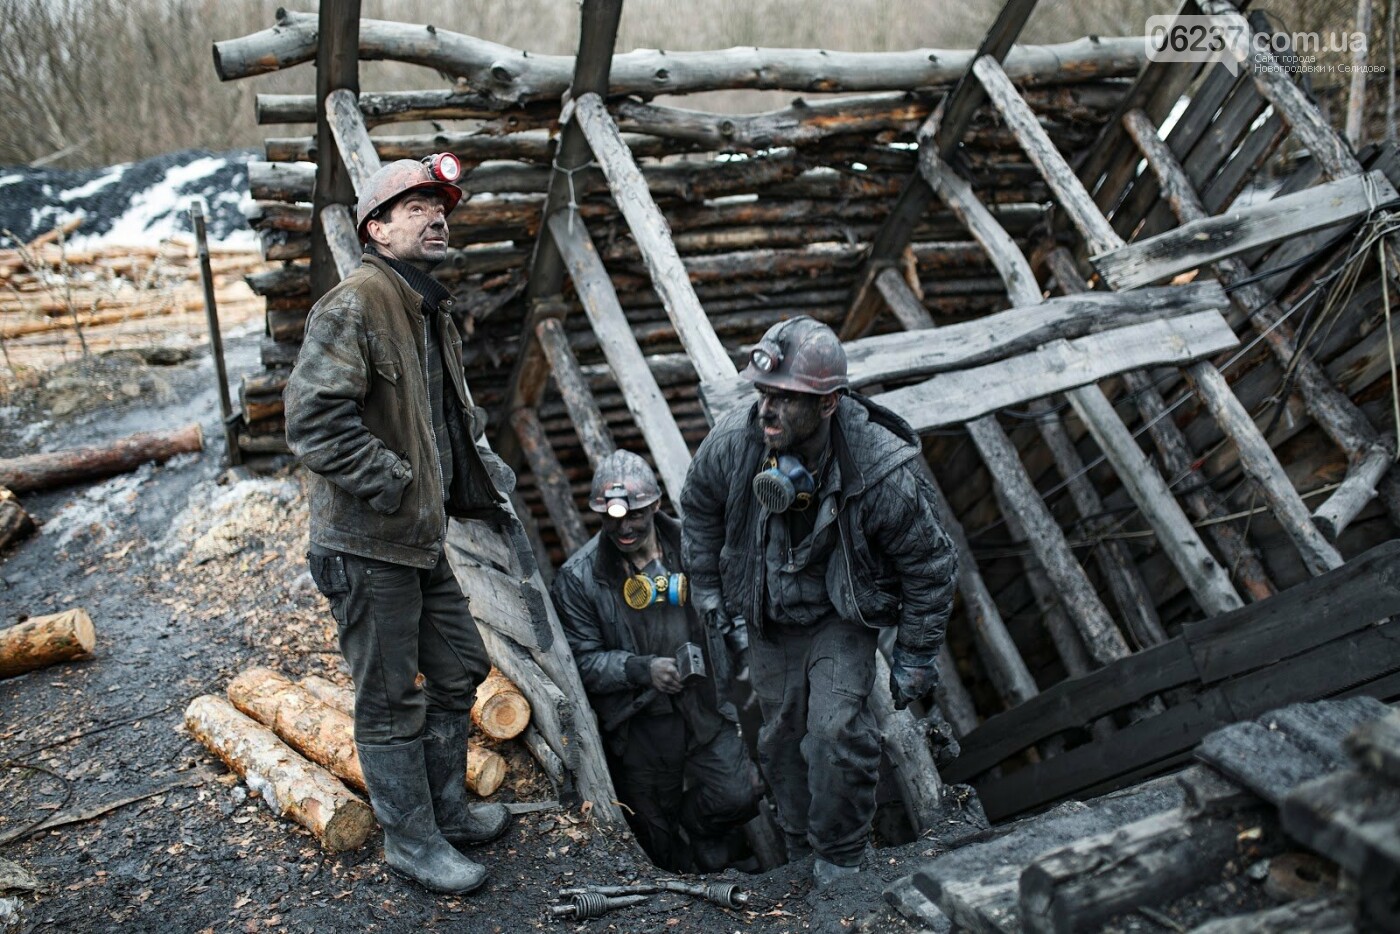 Ущерб от нелегальной добычи угля в Горняке превысил 8 миллионов гривен, фото-1